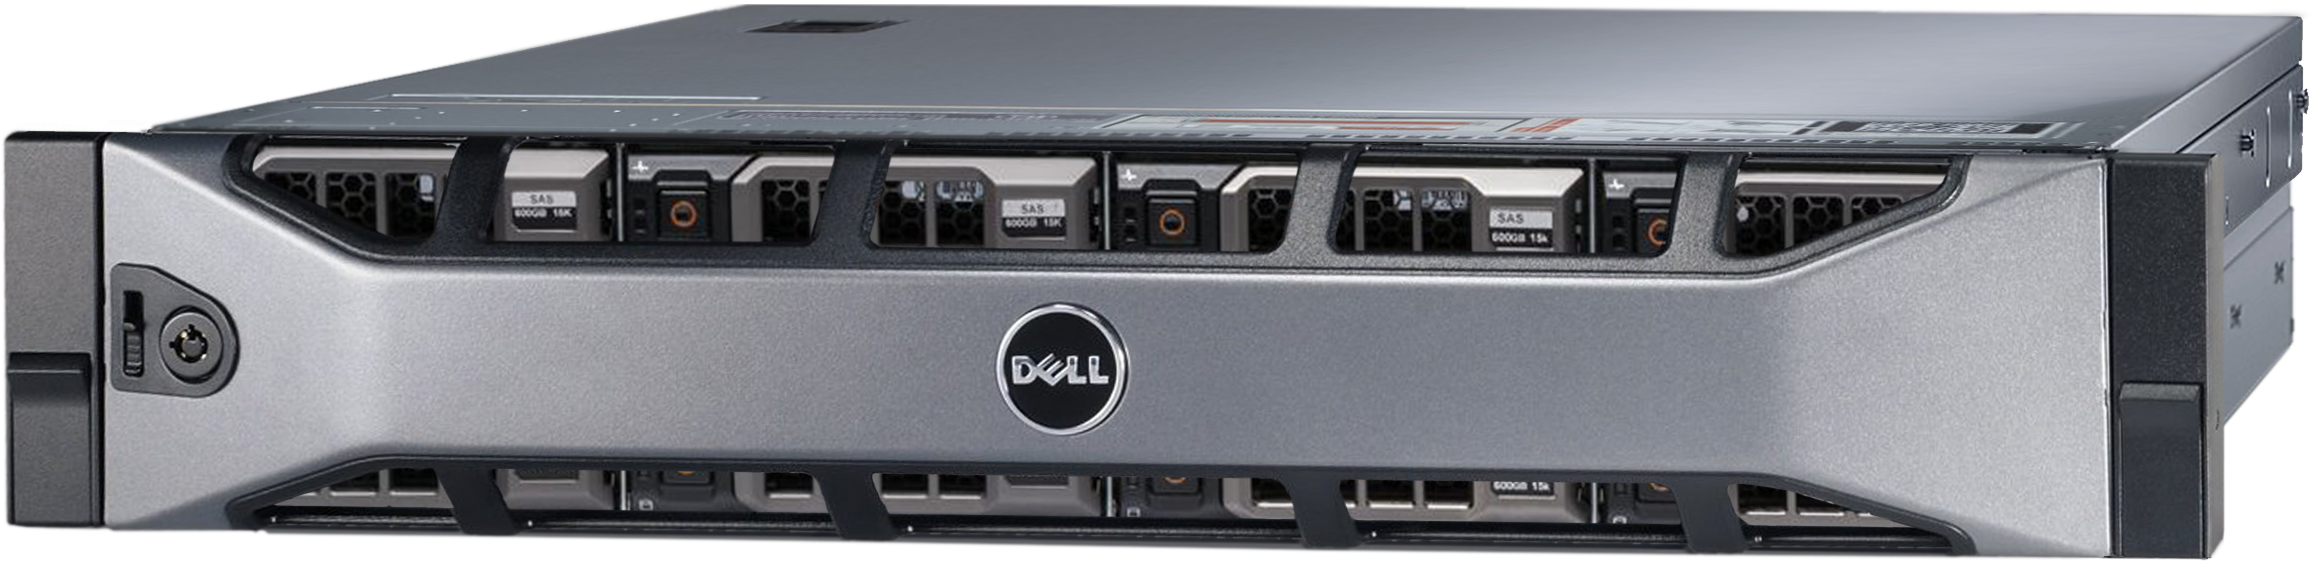 Аренда физического сервера DELL R720xd / 2 × E5-2620 v2 / 32 GB RAM / 2 x 240 GB SSD / 12 x 16 TB HDD / H310